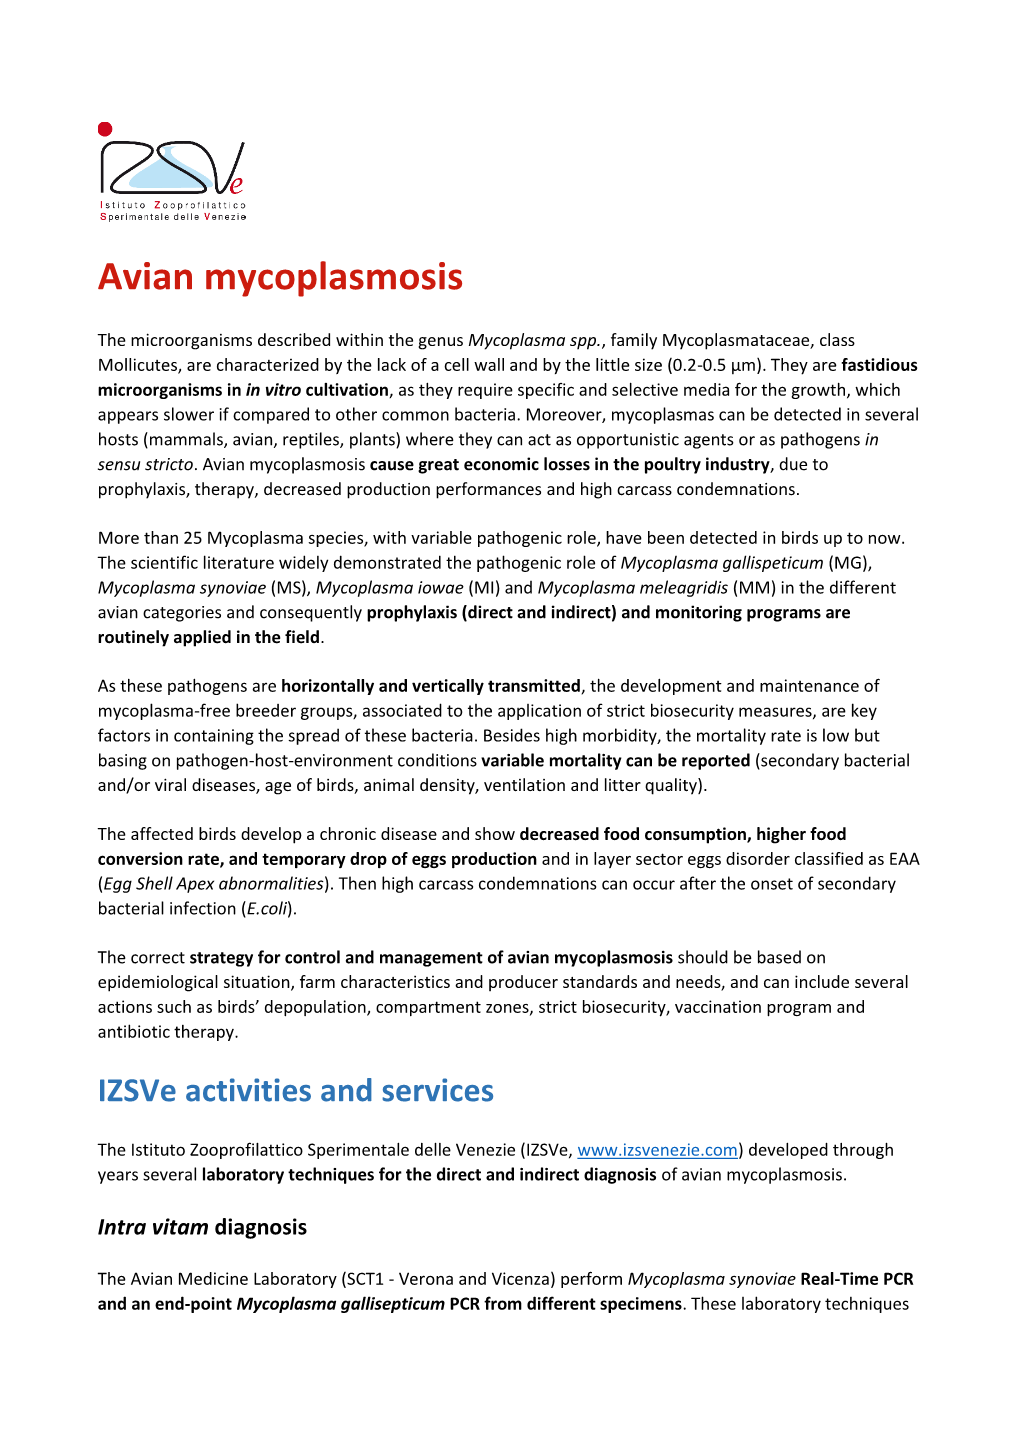 Avian Mycoplasmosis